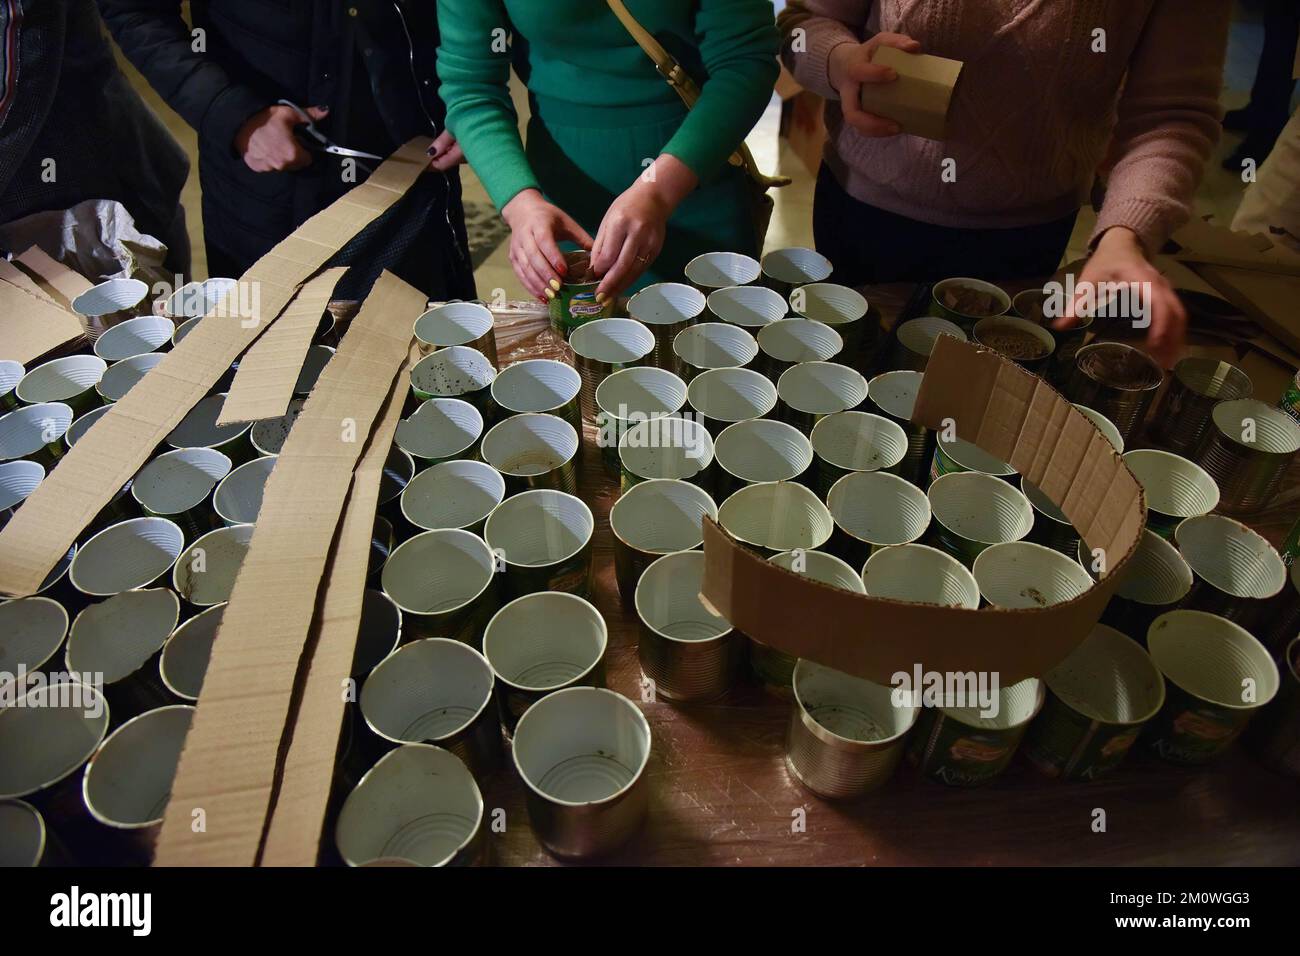 Les volontaires ont coupé du carton et le composent en boîtes préparées  pour fabriquer des bougies de tranchée, qui seront remises à l'armée  ukrainienne pour réchauffer les tranchées et cuisiner des aliments